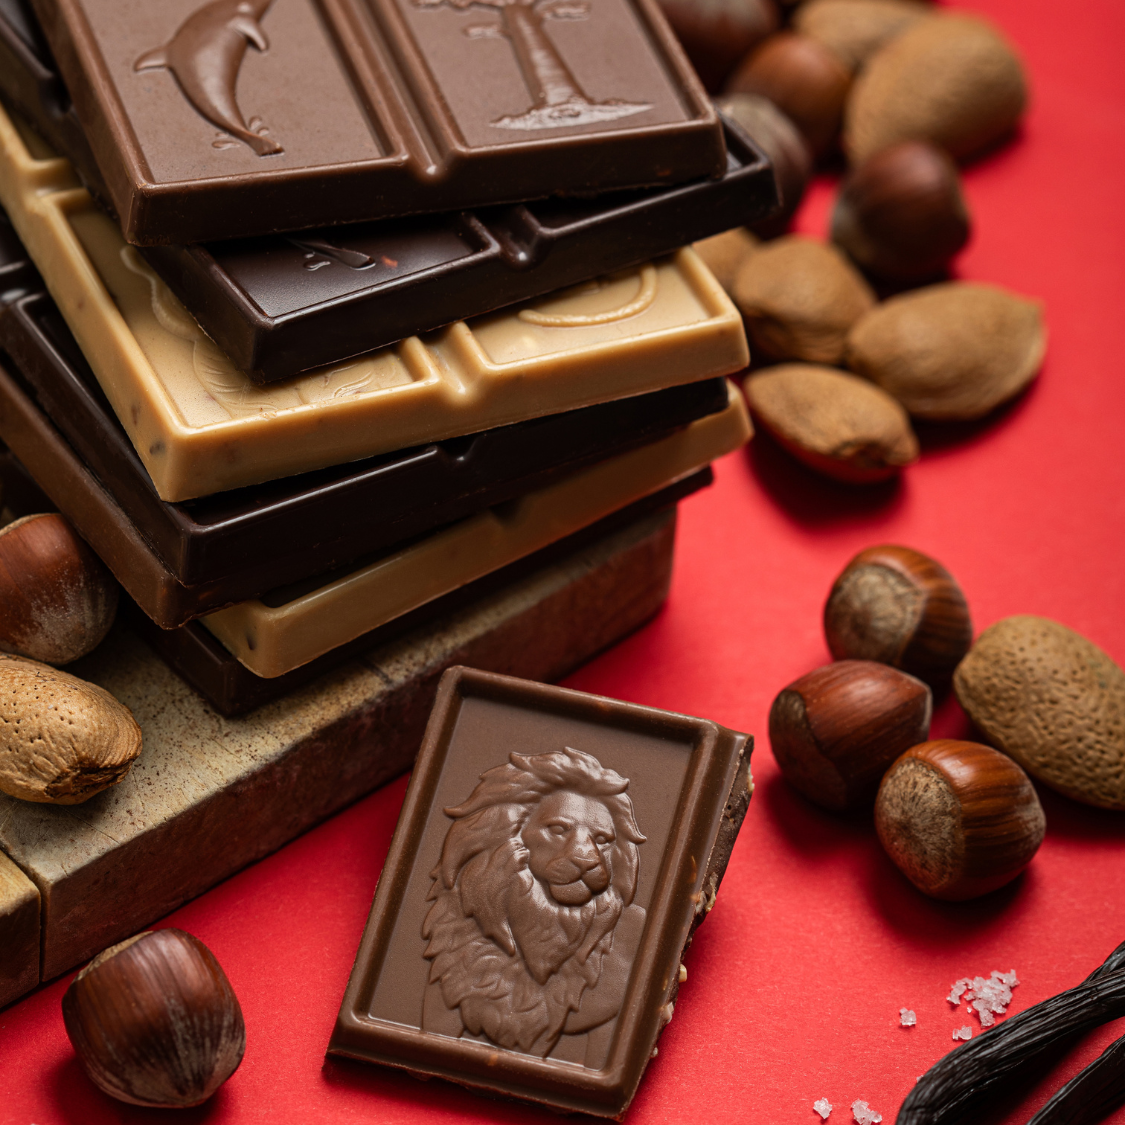 
                  
                    Gamme de tablettes de chocolat Merveilles du Monde aux noisettes et amandes pilées, et jolis coffrets à offrir pour petits et grands gourmands.
                  
                